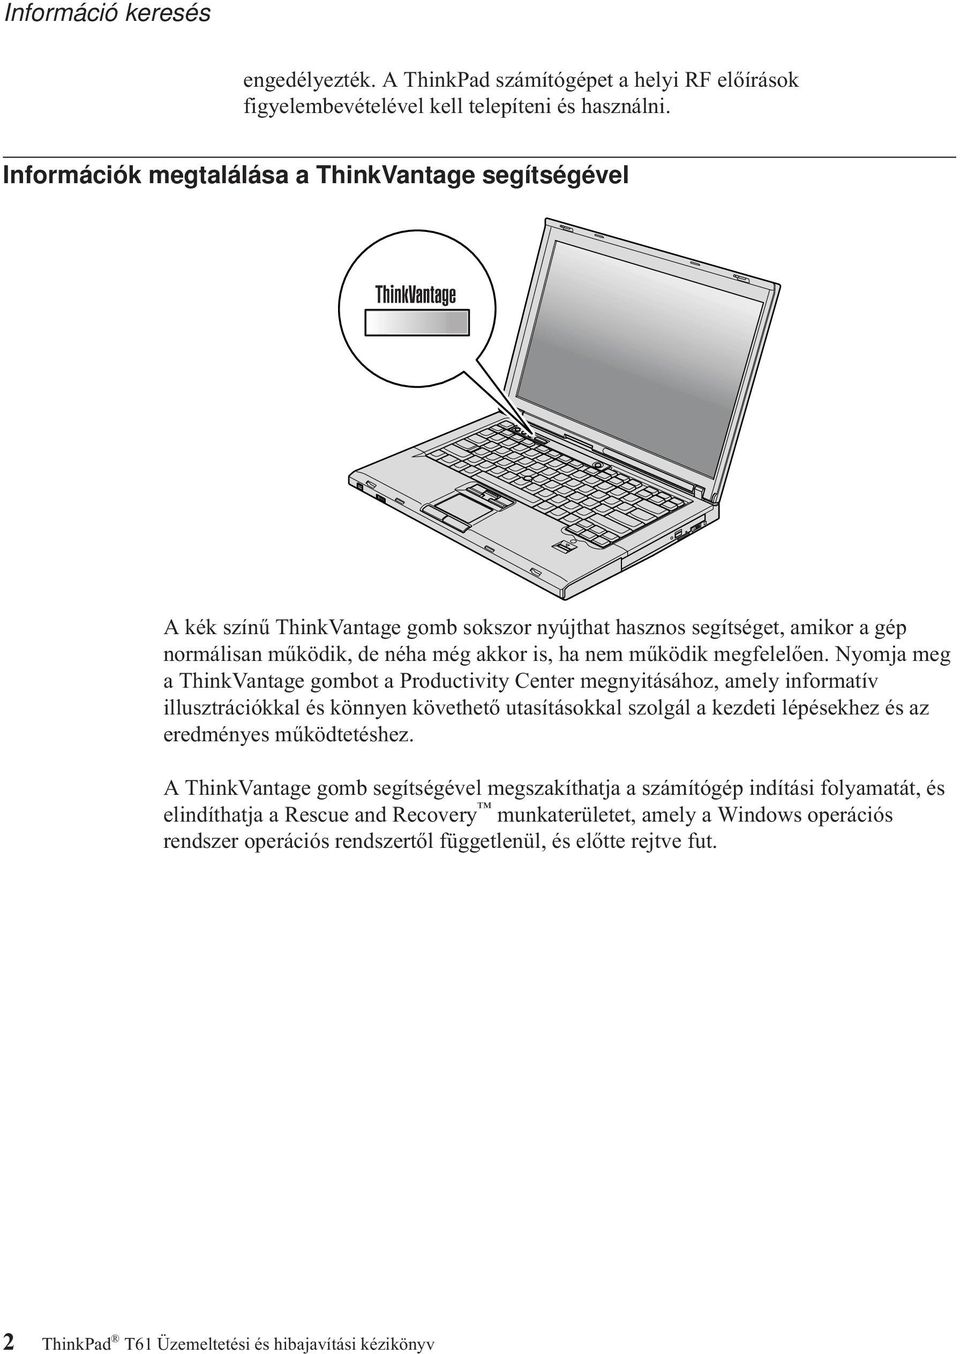 ThinkPad T61 Üzemeltetési és hibajavítási kézikönyv - PDF Free Download